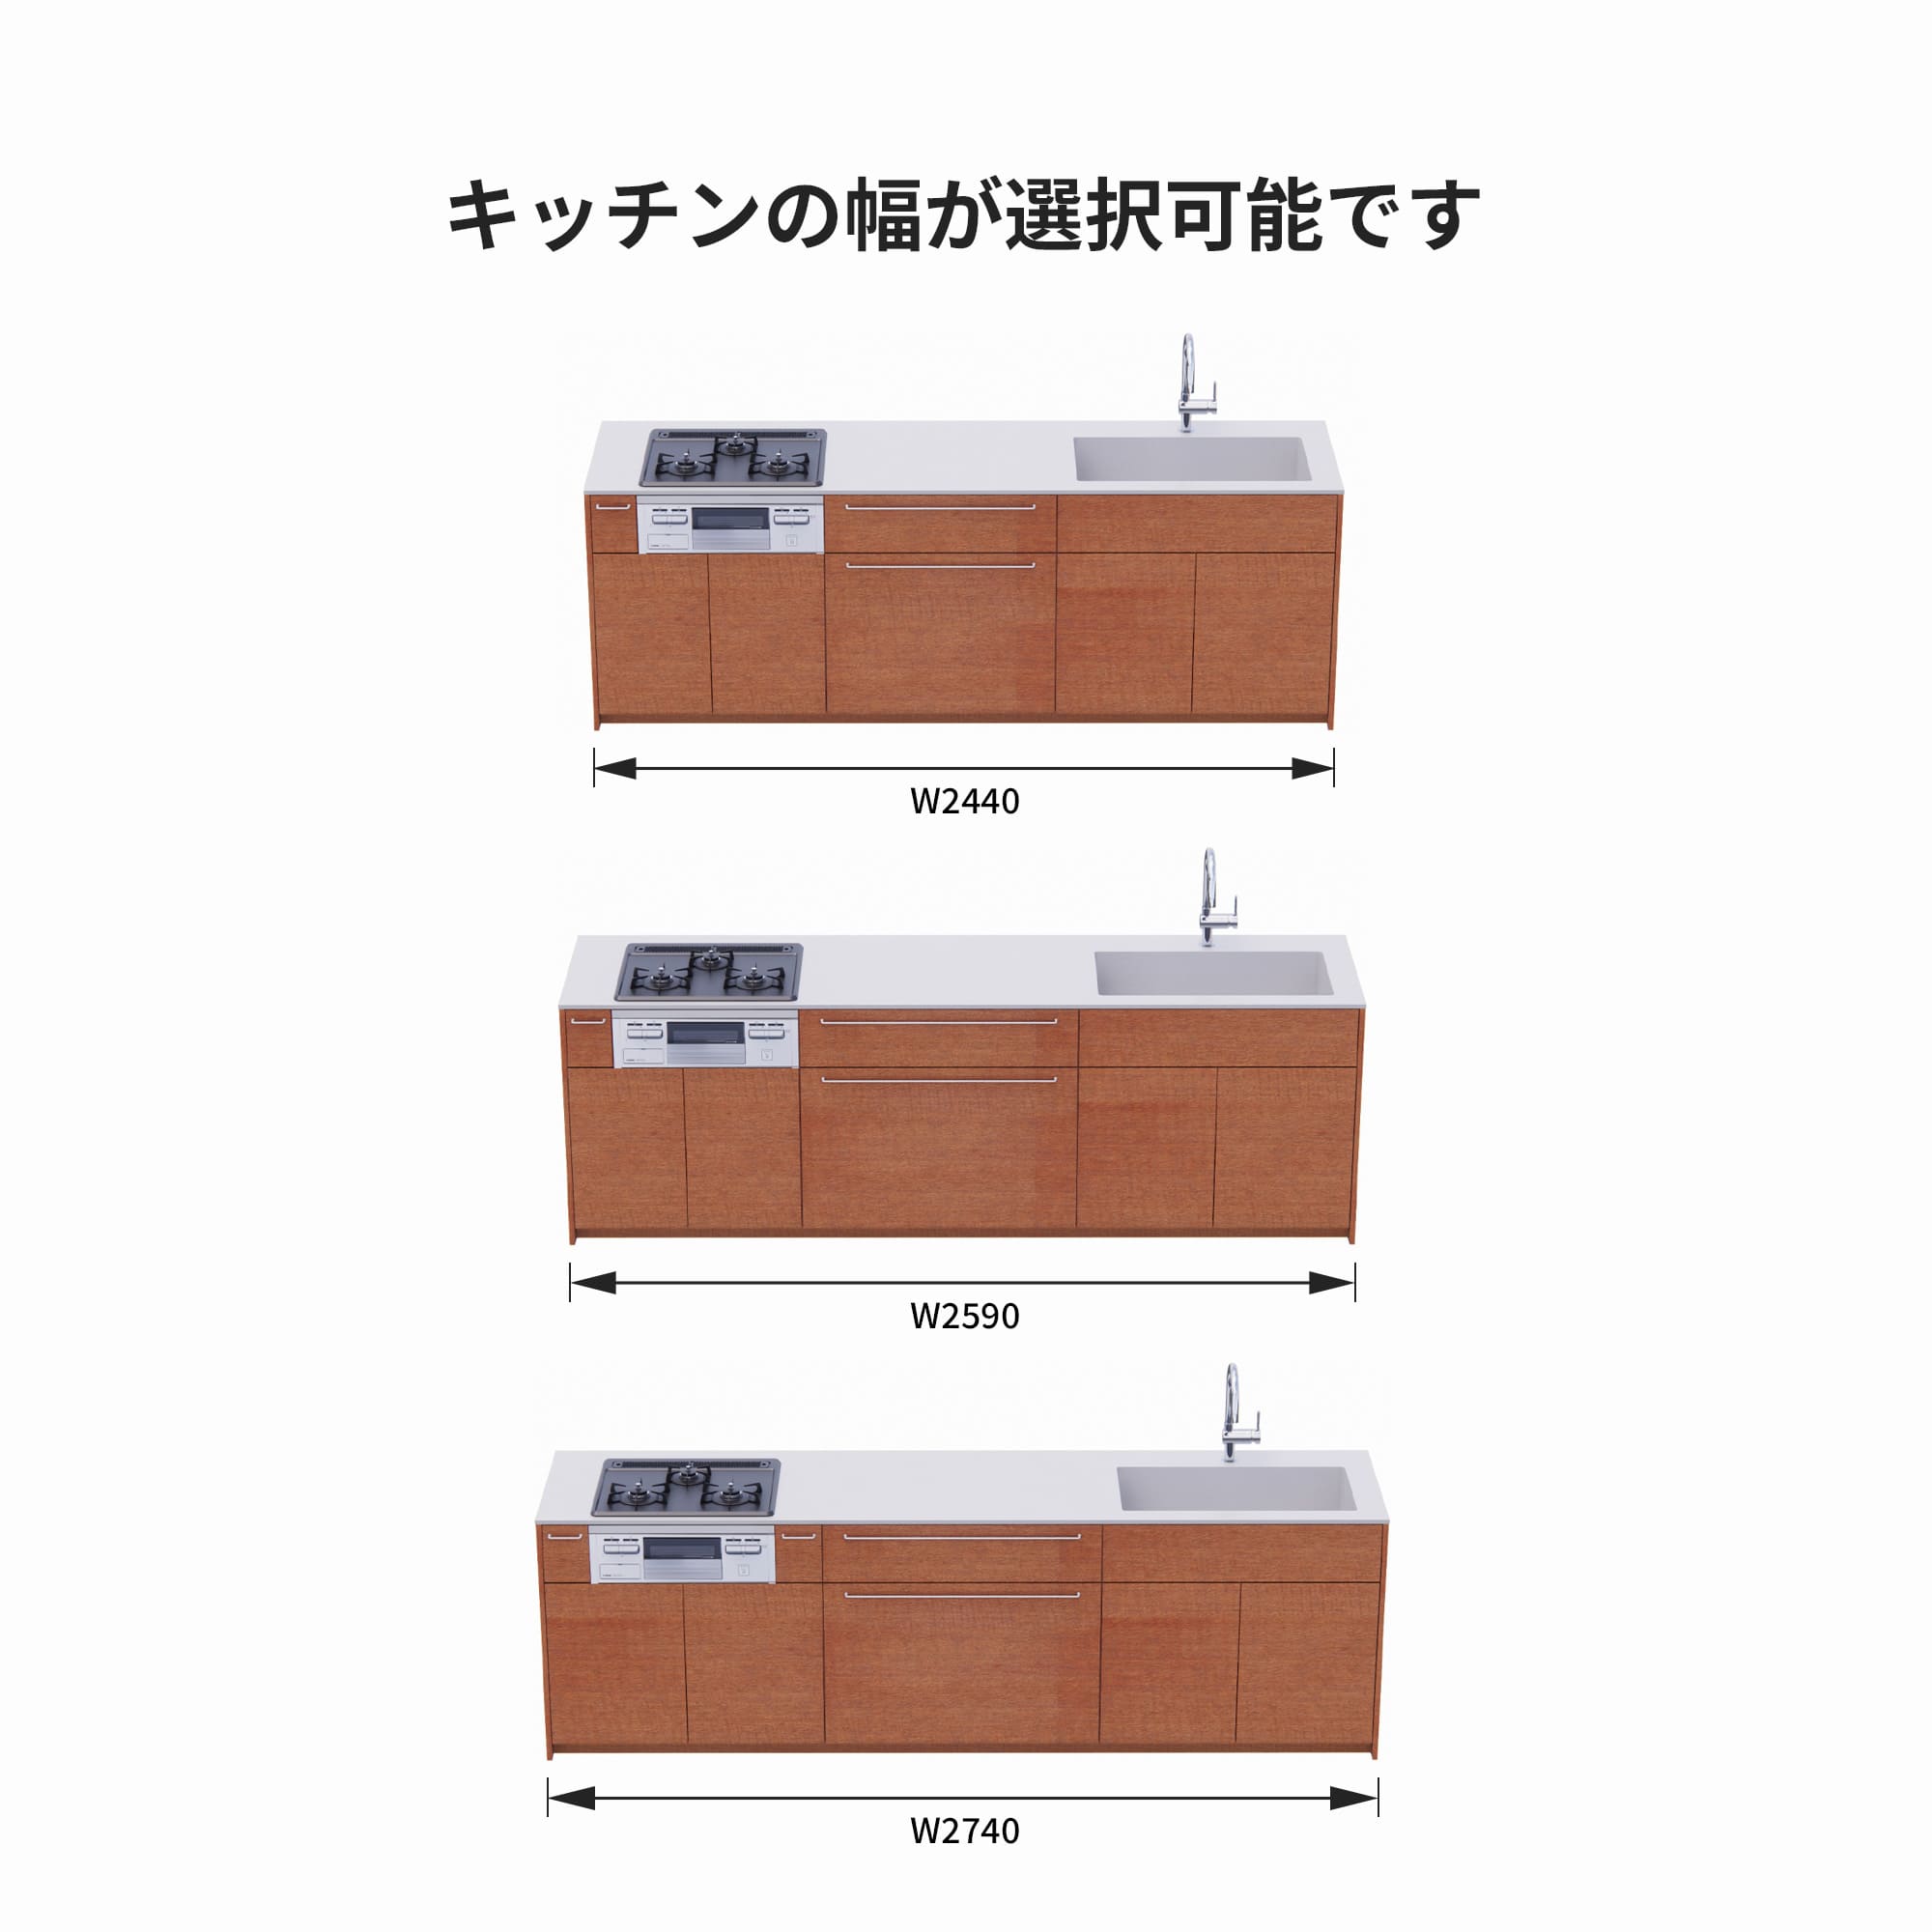 木製システムキッチン 対面型 W2440～2740・コンロあり / オーブンあり / 食洗機なし KB-KC022-43-G183